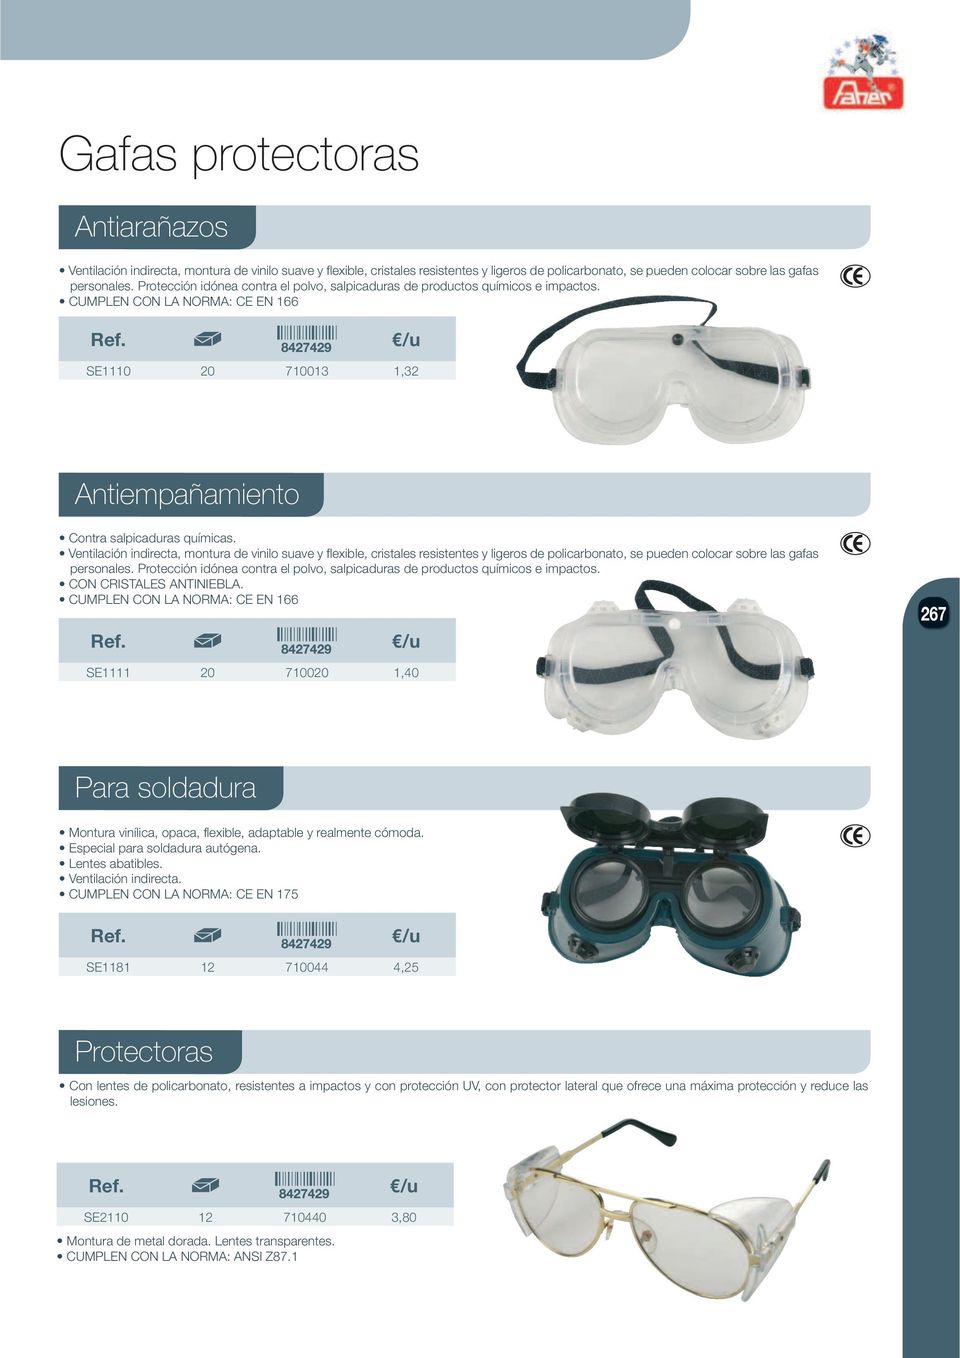 Ventilación indirecta, montura de vinilo suave y flexible, cristales resistentes y ligeros de policarbonato, se pueden colocar sobre las gafas personales.